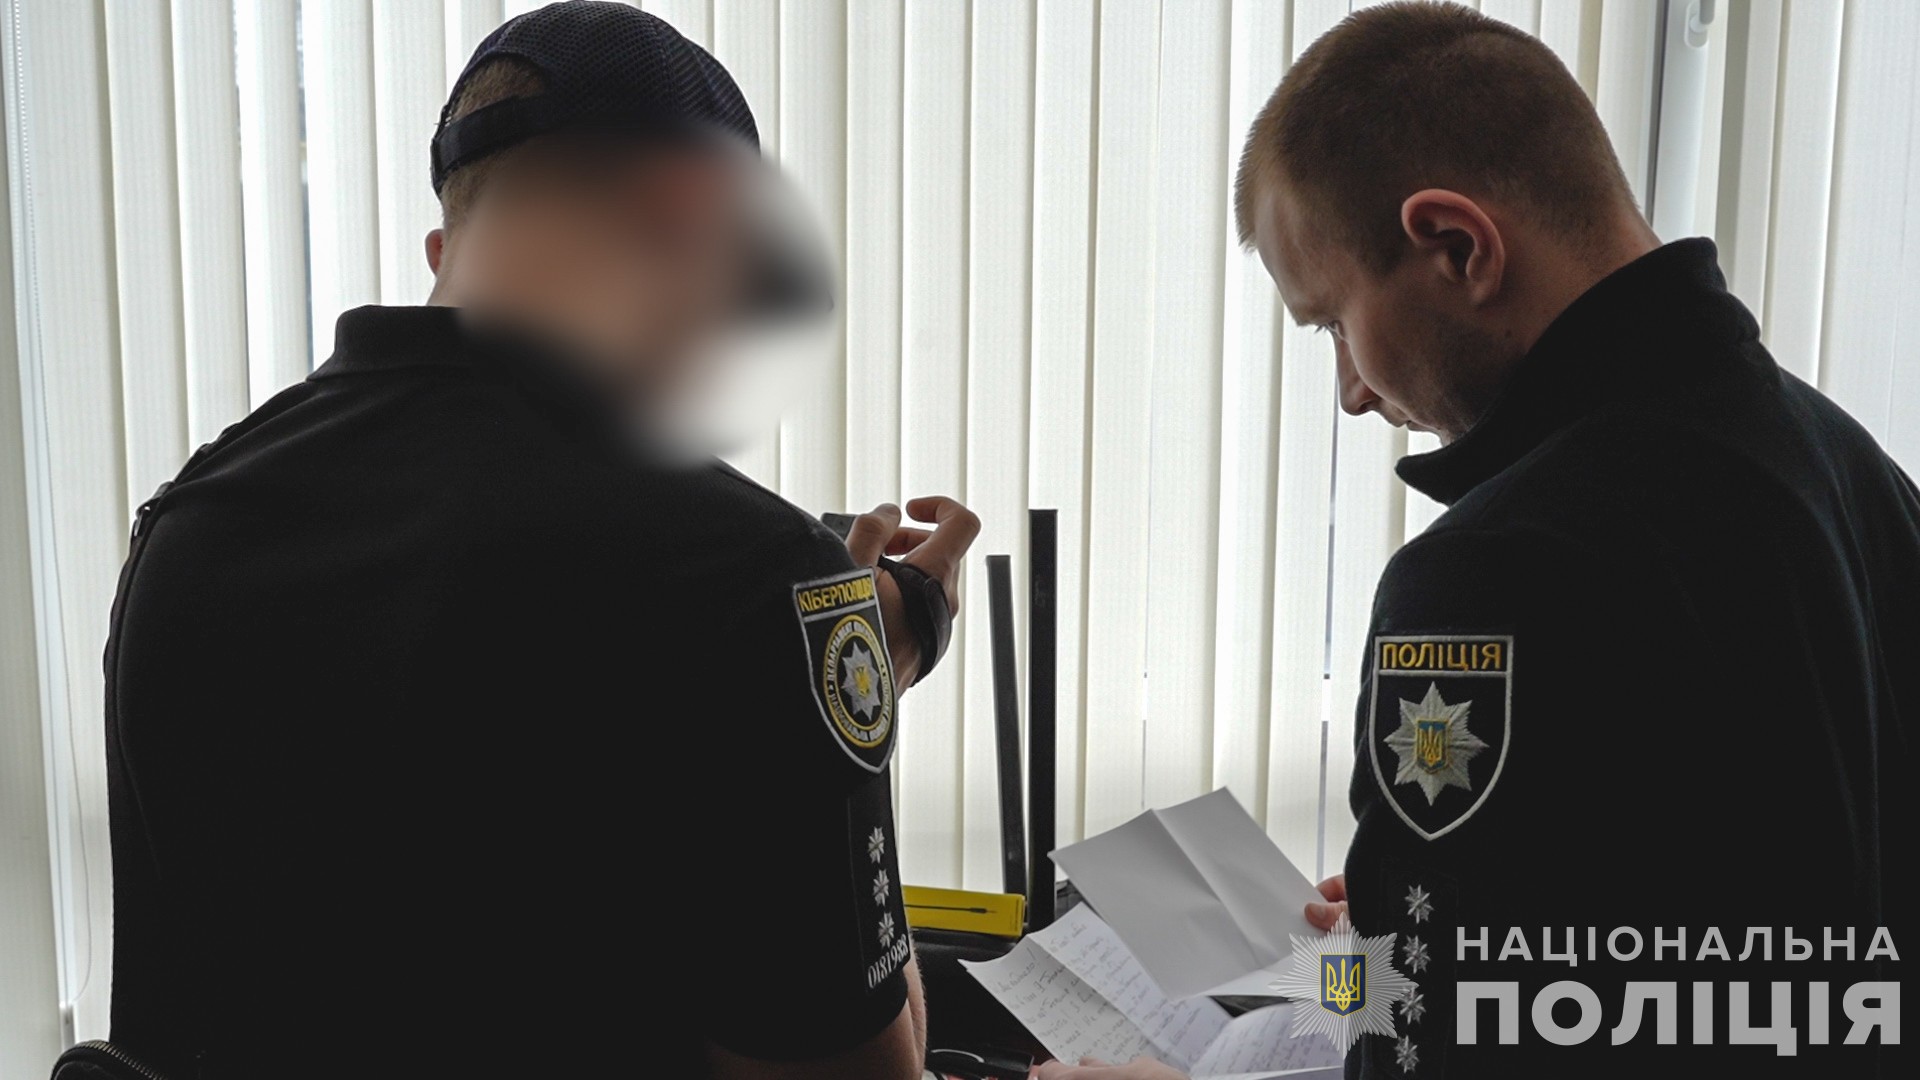 Шахрайський call-центр в Одесі на 5,5 мільйонів гривень ошукав  громадян Чехії